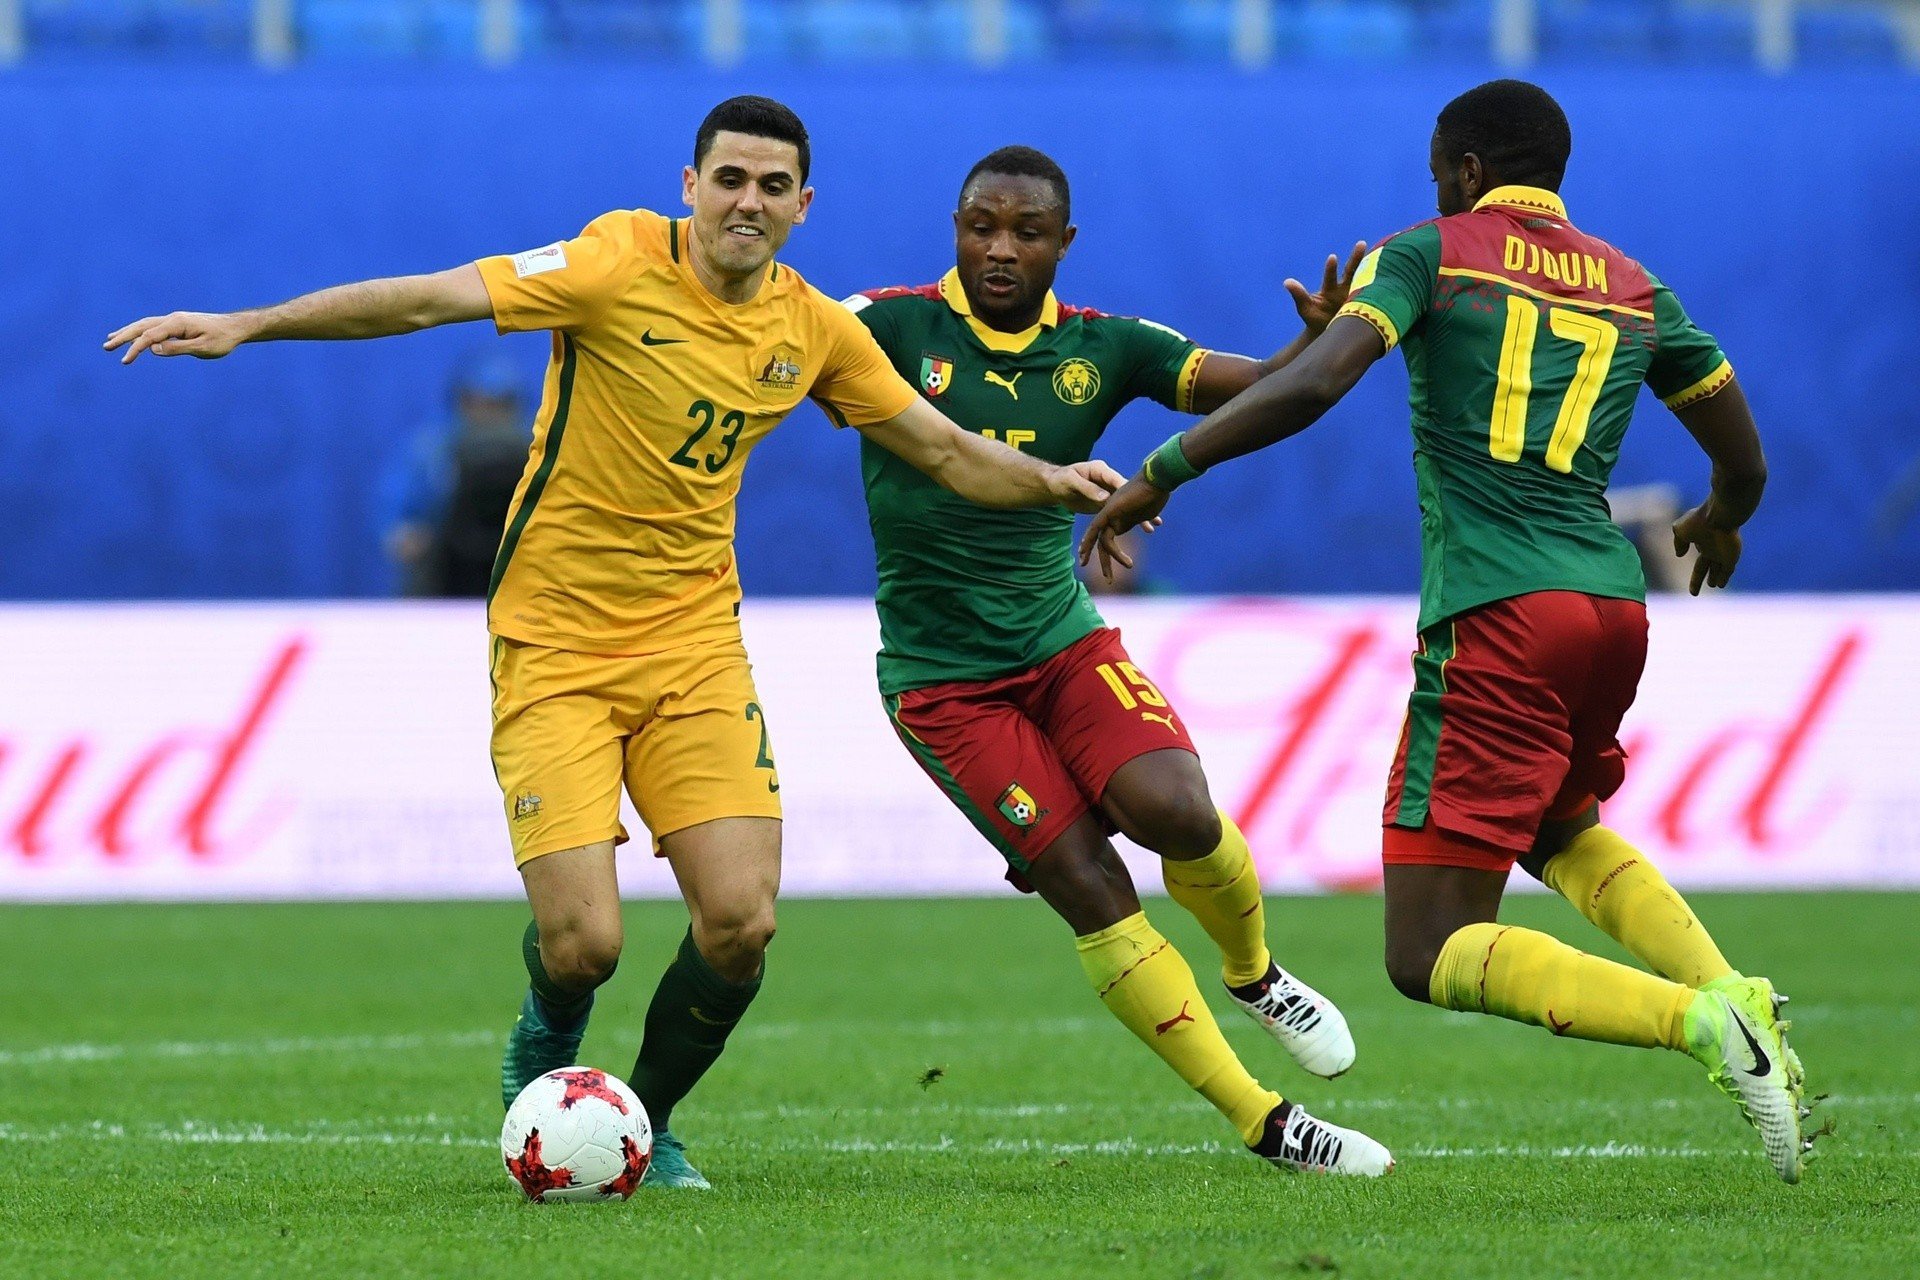 Puchar Konfederacji 2017. Kamerun na remis z Australią | Gol24